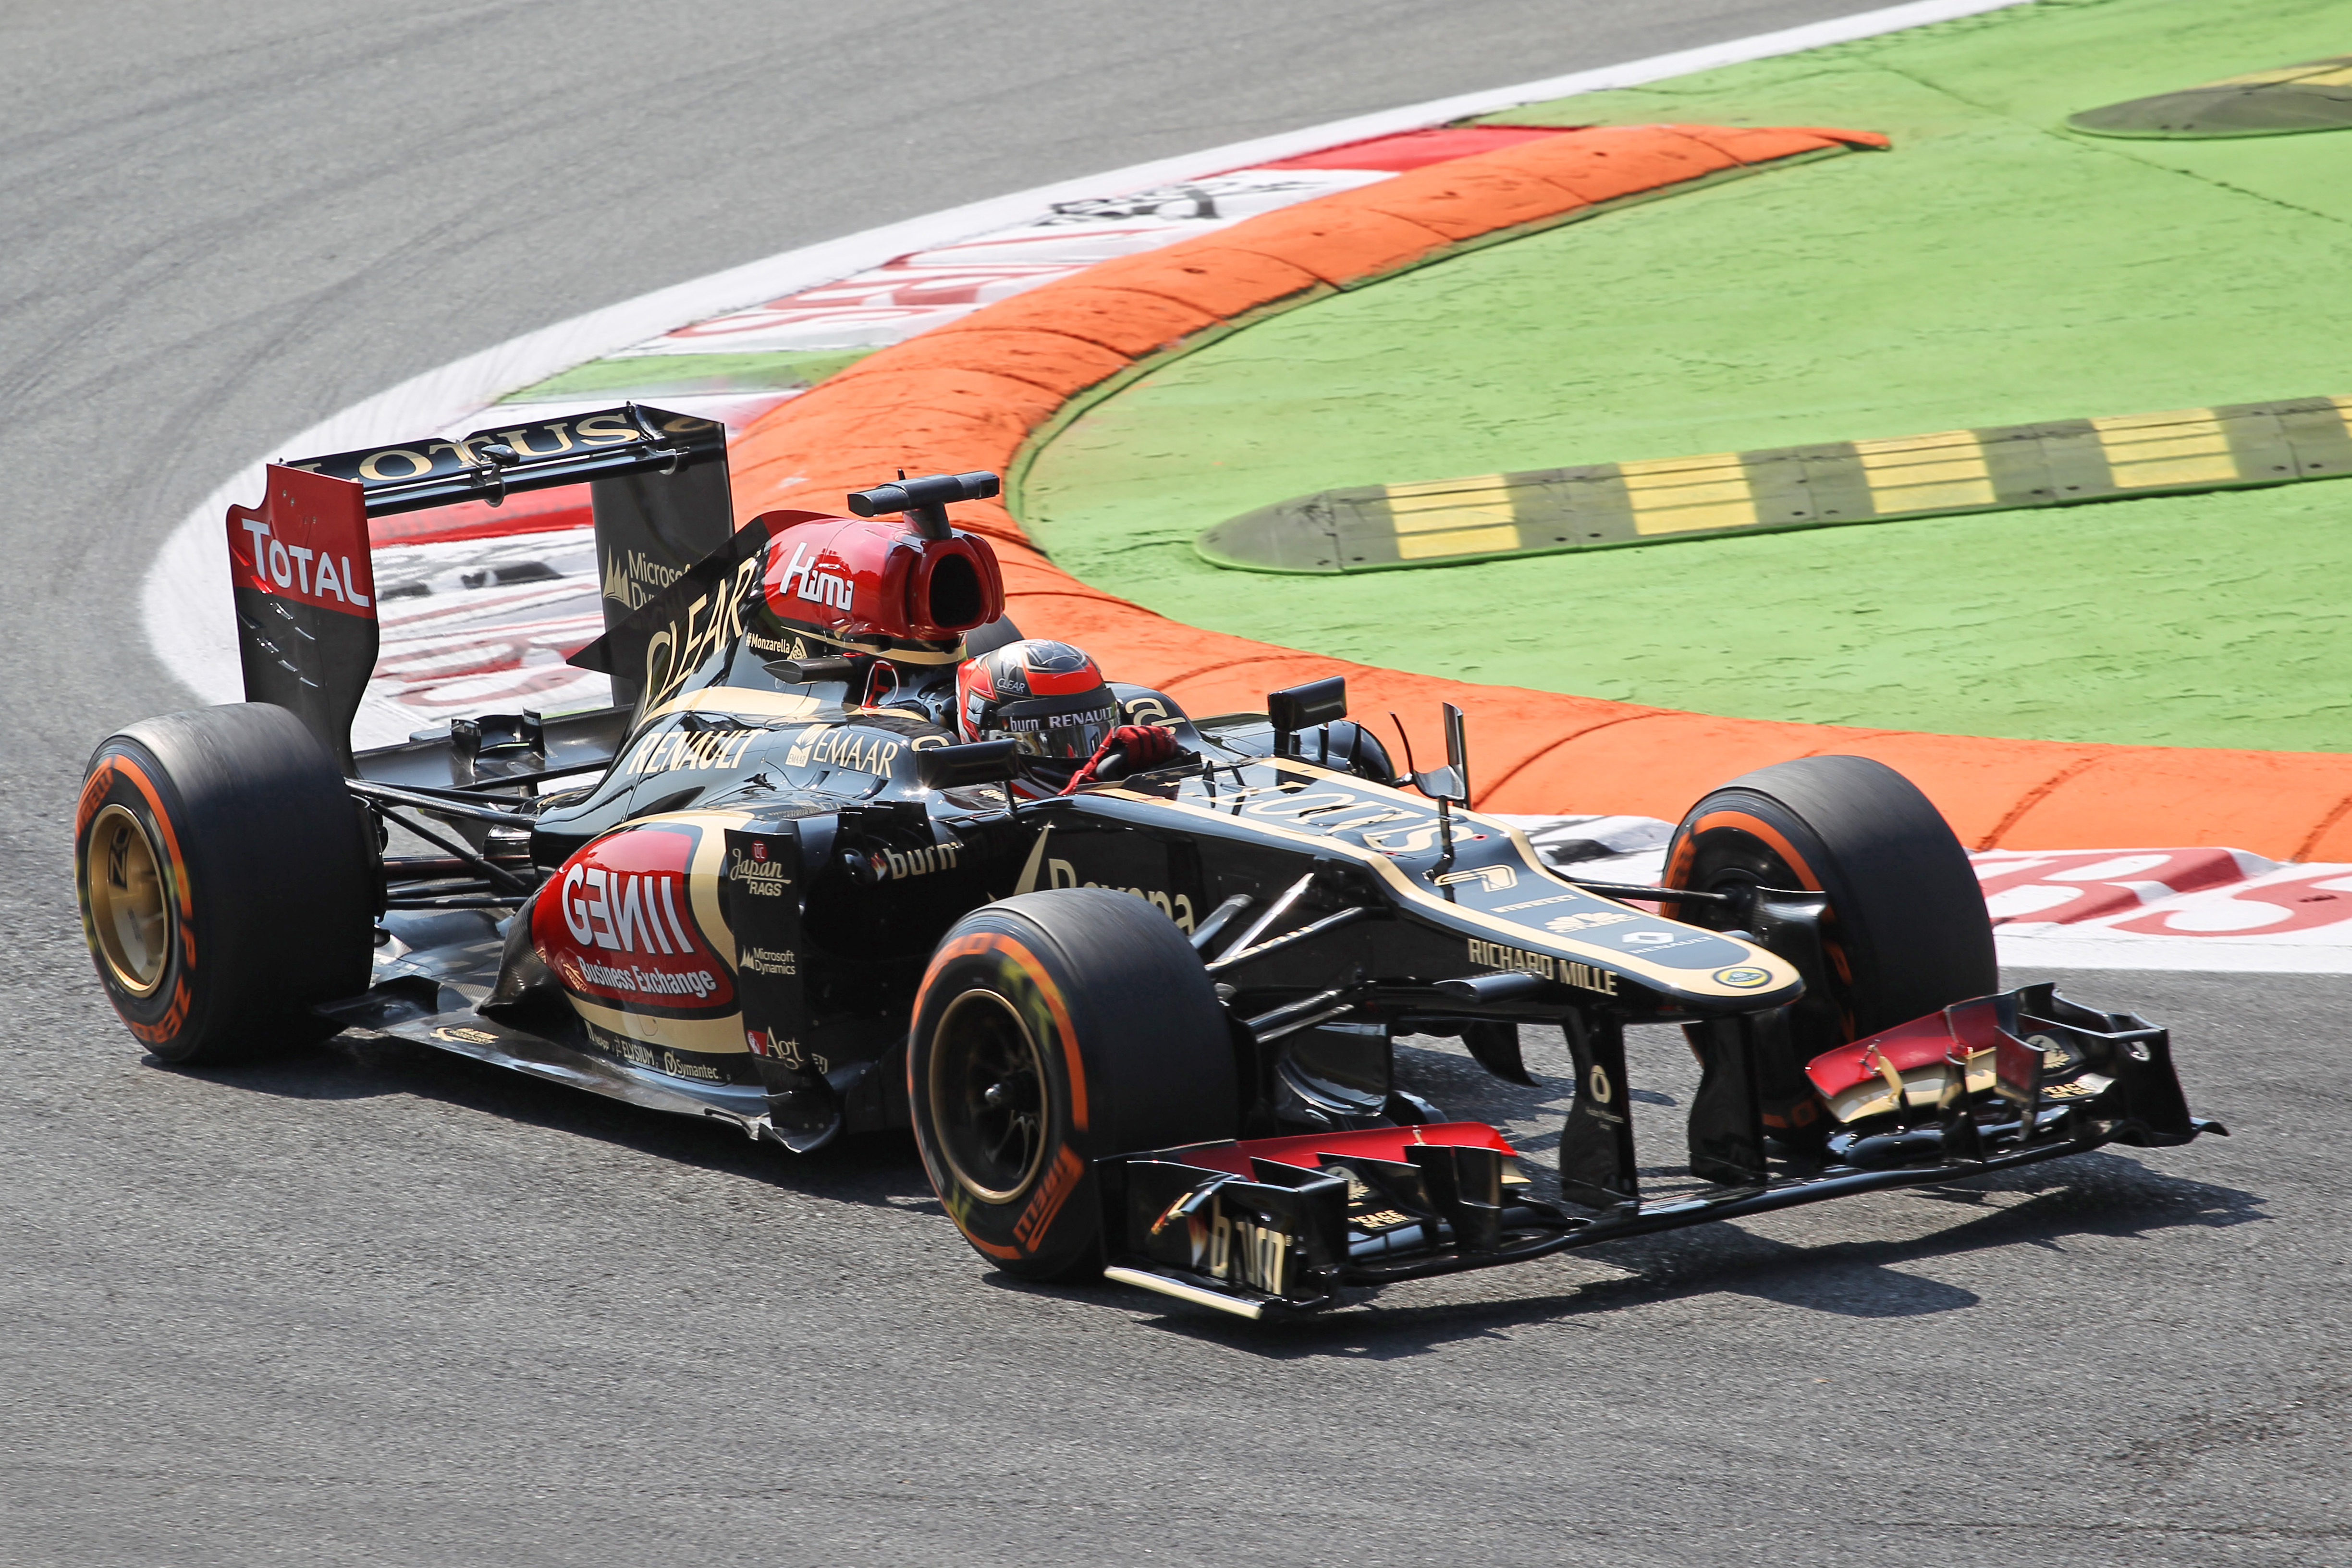 Räikkönen aast na puntloze races op podium in Singapore